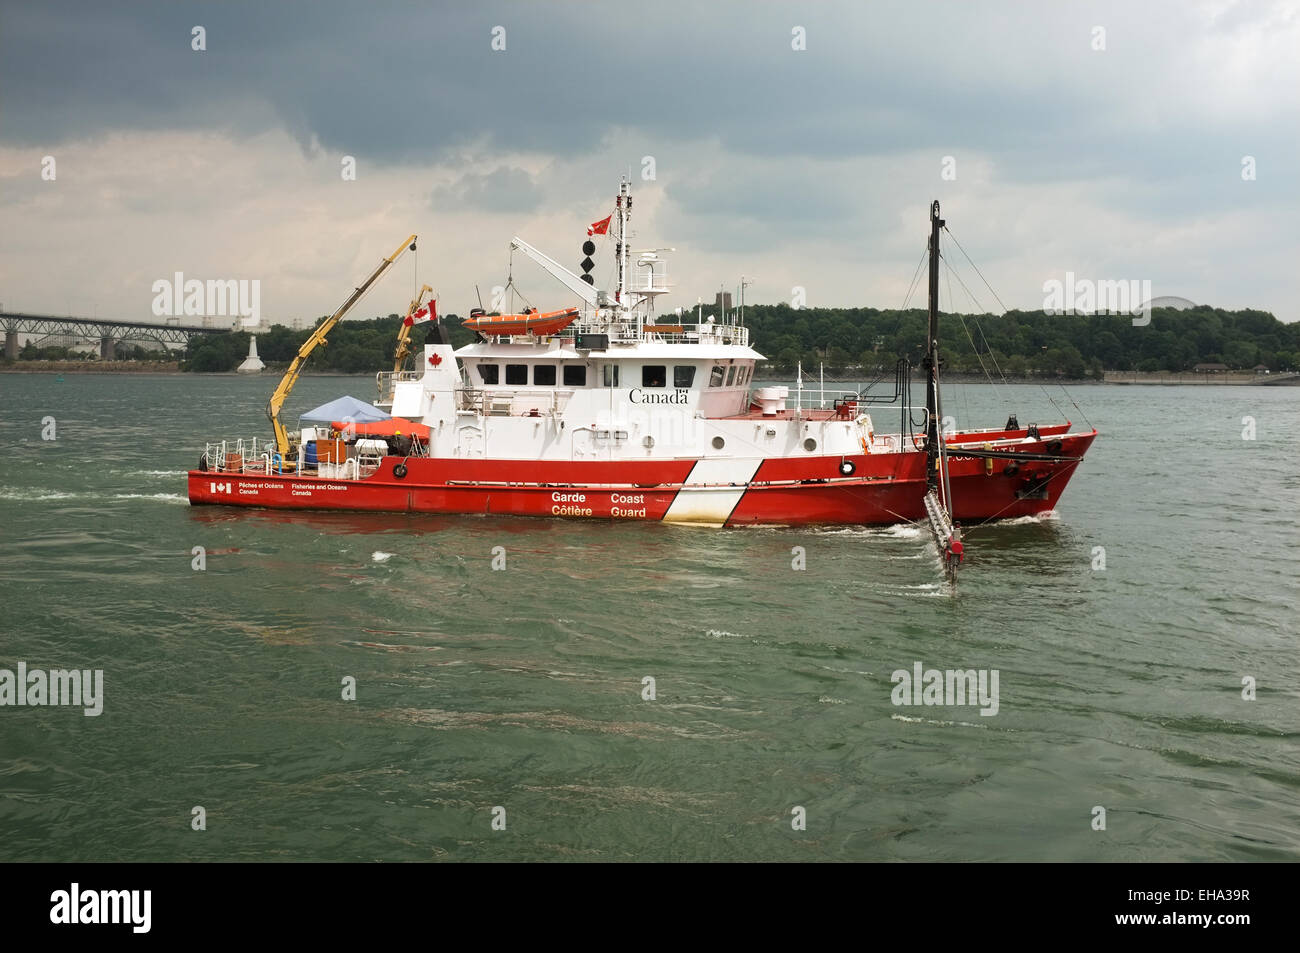 Canadian Coast Guard en el buque San Lorenzo, Montreal, Quebec. Foto de stock